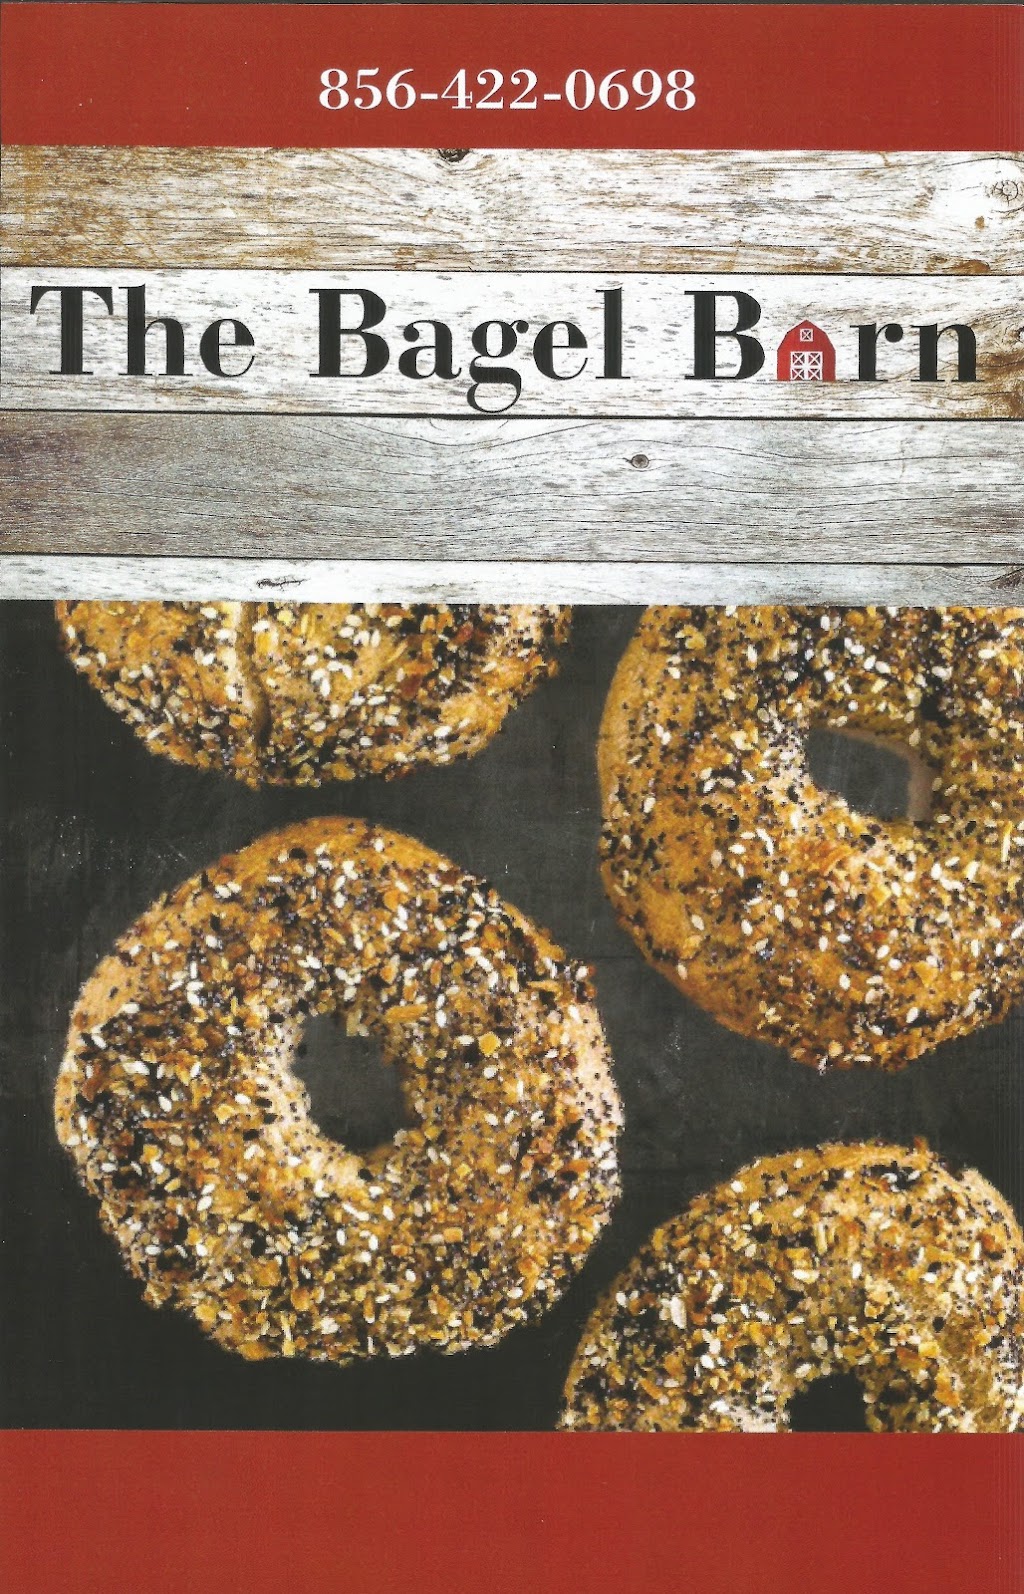 The Bagel Barn Bakery & Cafe | 2205 Delsea Dr, Franklinville, NJ 08322 | Phone: (856) 422-0698